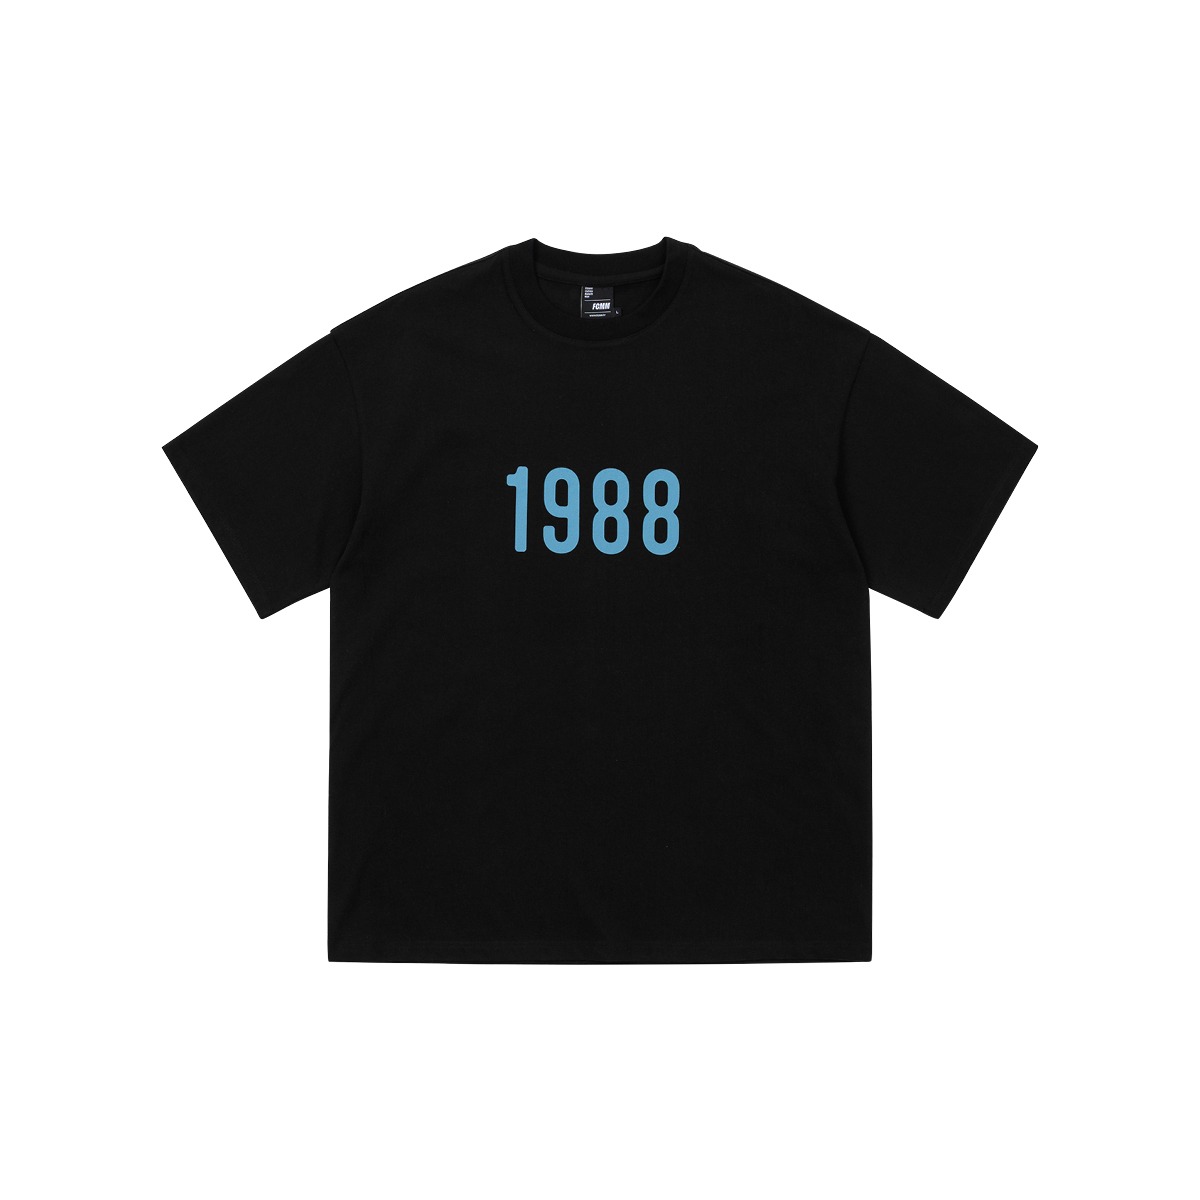 1988 레트로 티셔츠 - 블랙